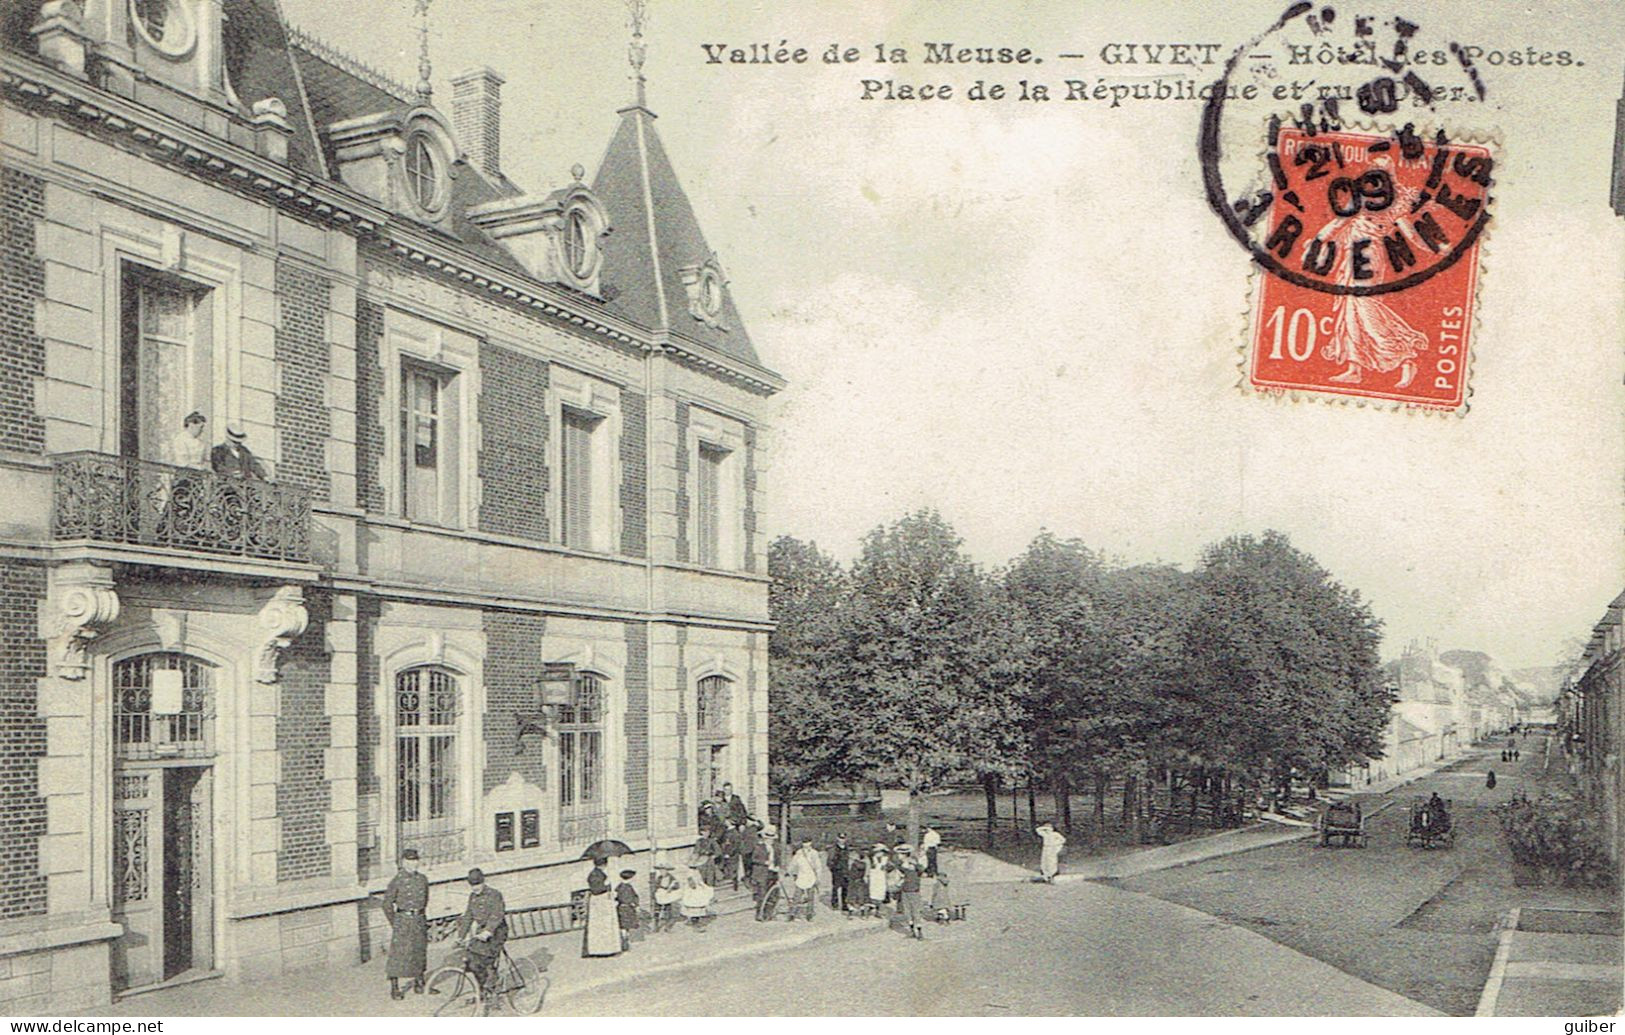 08 Givet Hiotel De La Poste Place De La Republique Et Rue Oger 1909  - Givet